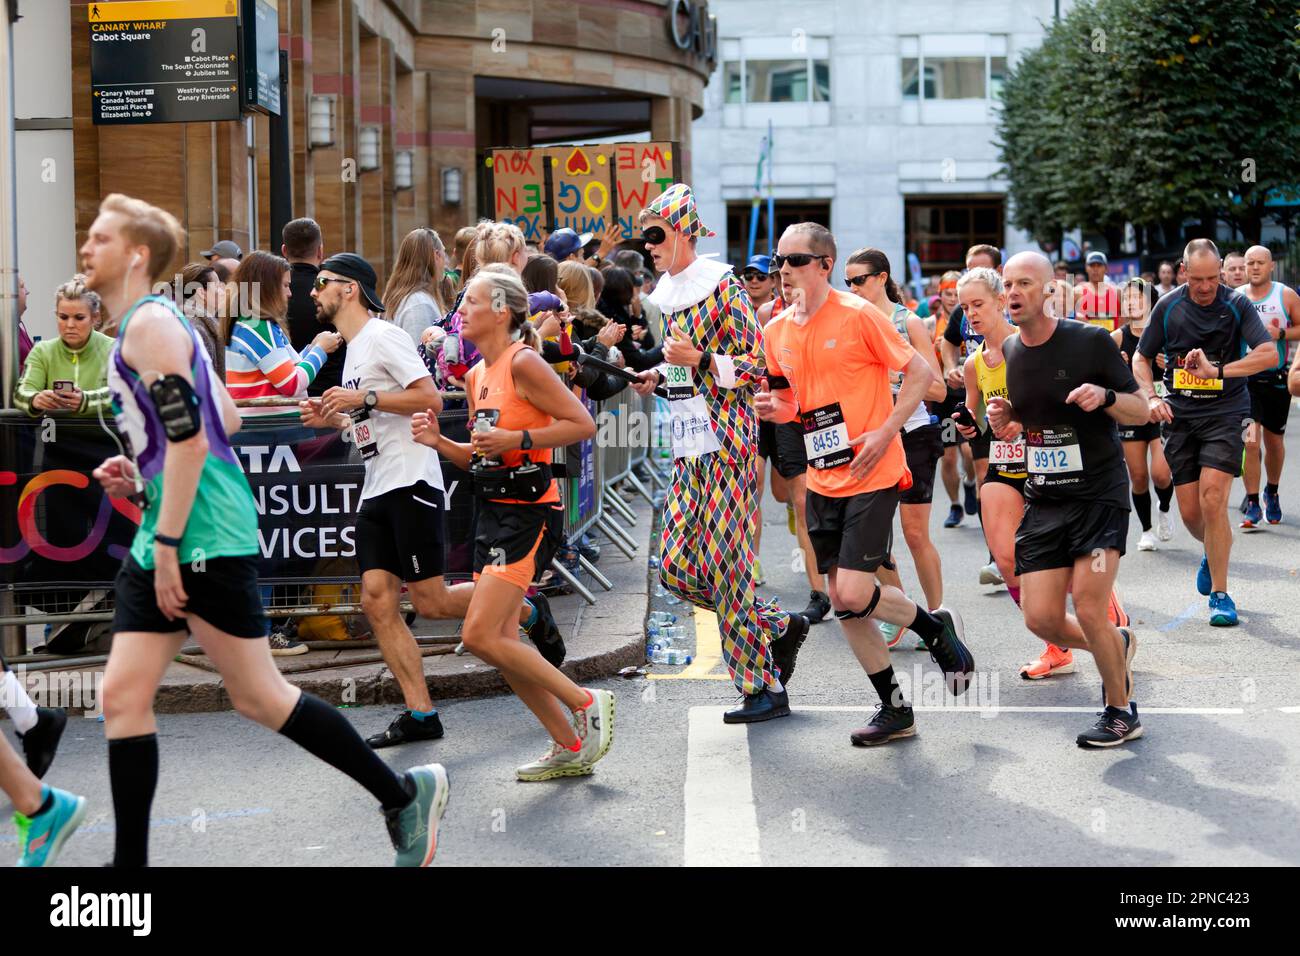 Martin Porter, am Cabot Square, zu seinem offiziellen Rekordversuch, gekleidet als Harlekin, beim London Marathon 2022 Stockfoto